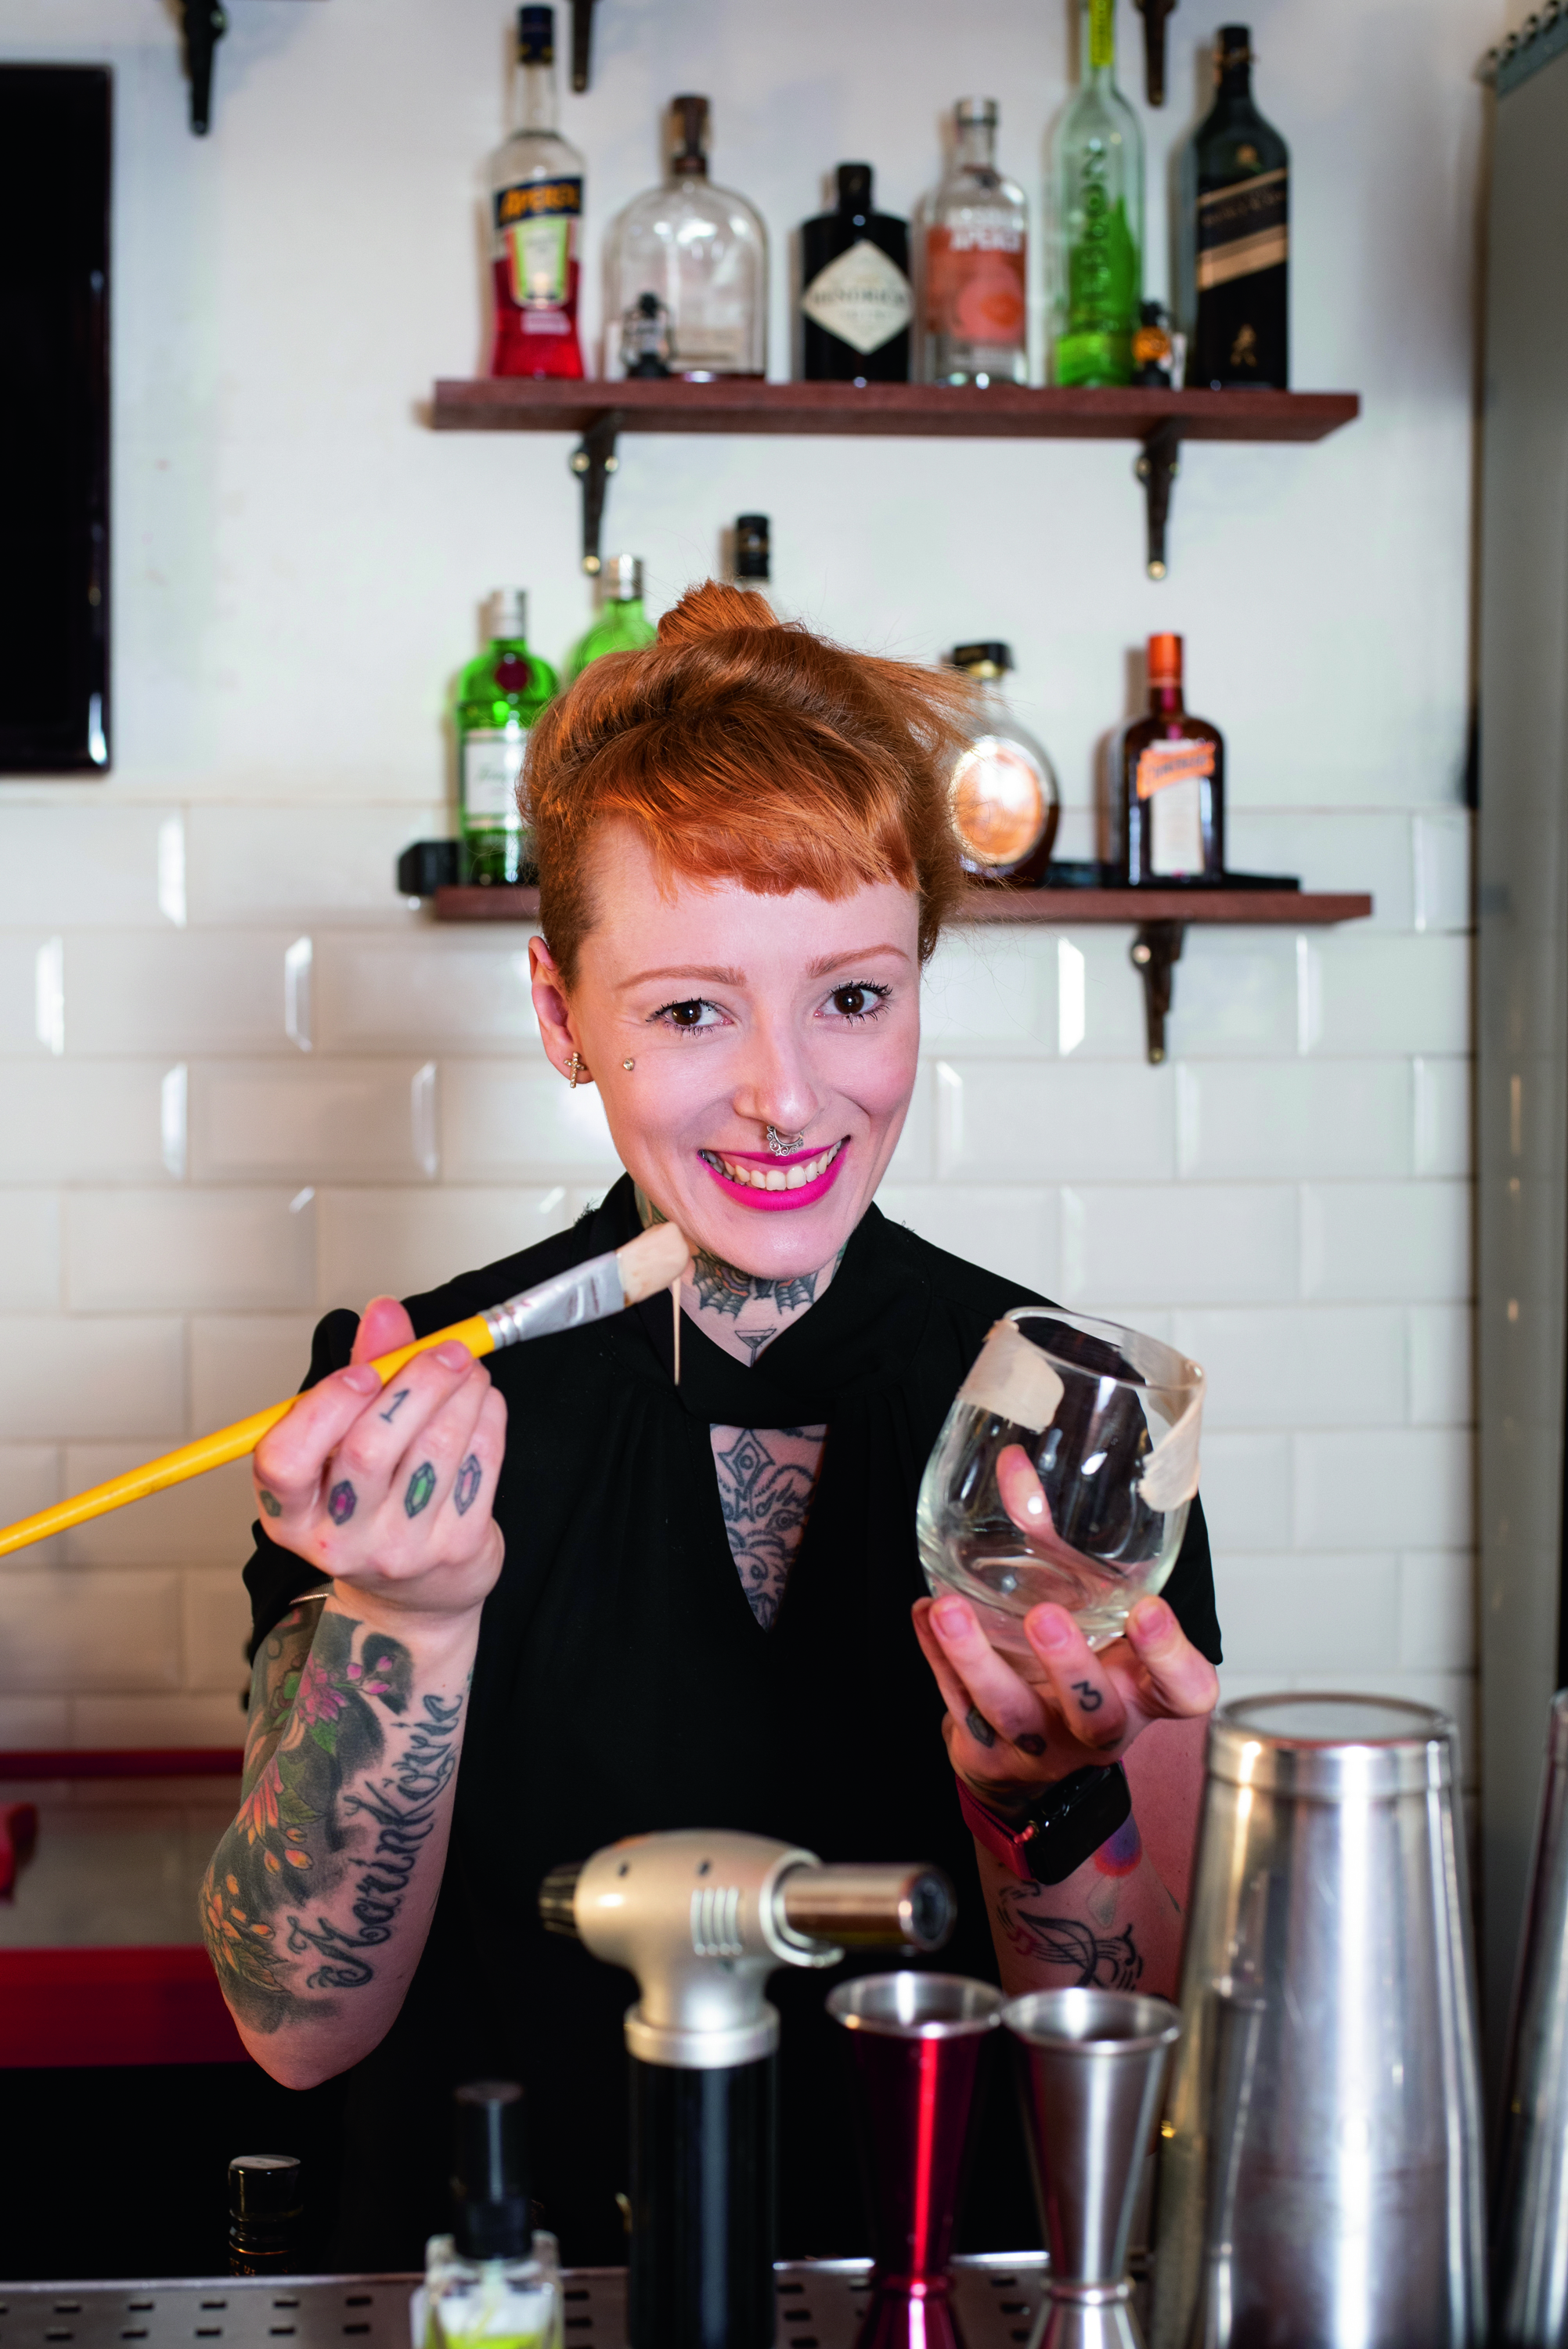 A bartender Stephanie Marinkovic, de cabelo ruivo e braços tatuados, pintando o lado de fora de um copo com ganache de chocolate branco.